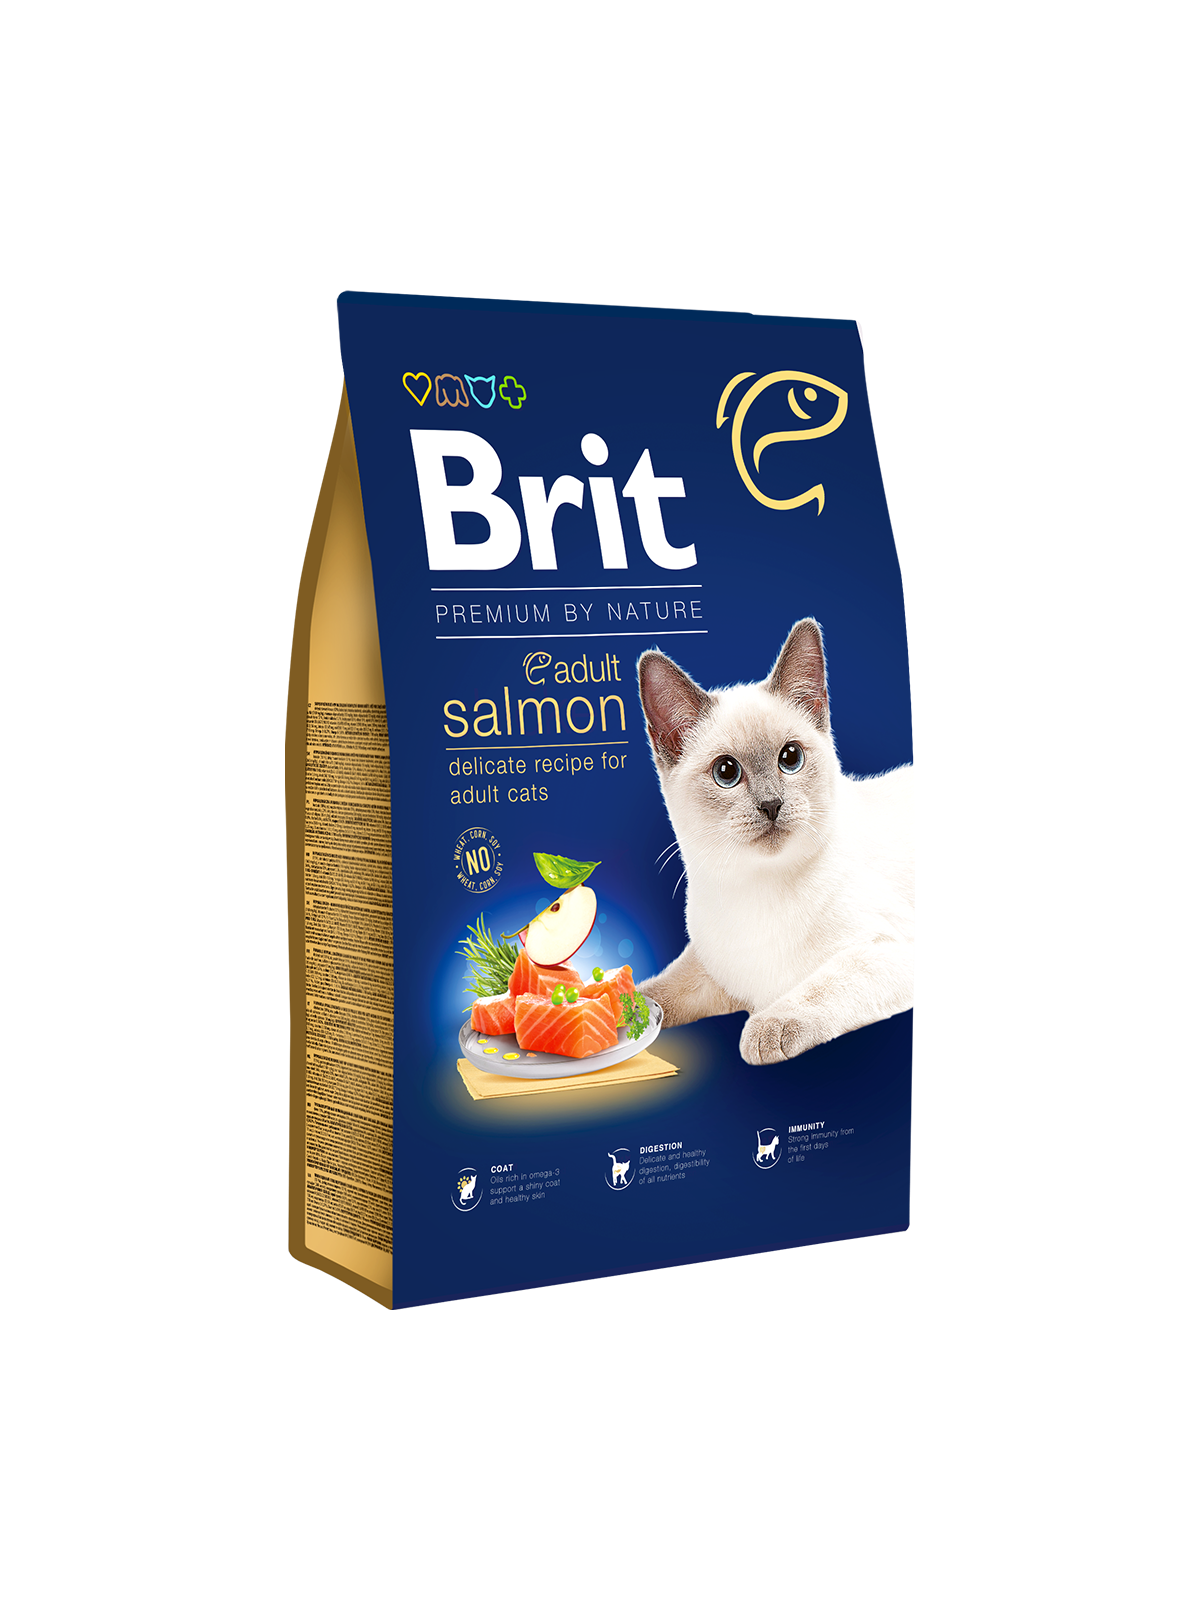 Brit Premium Cat Adult Salmon 8kg